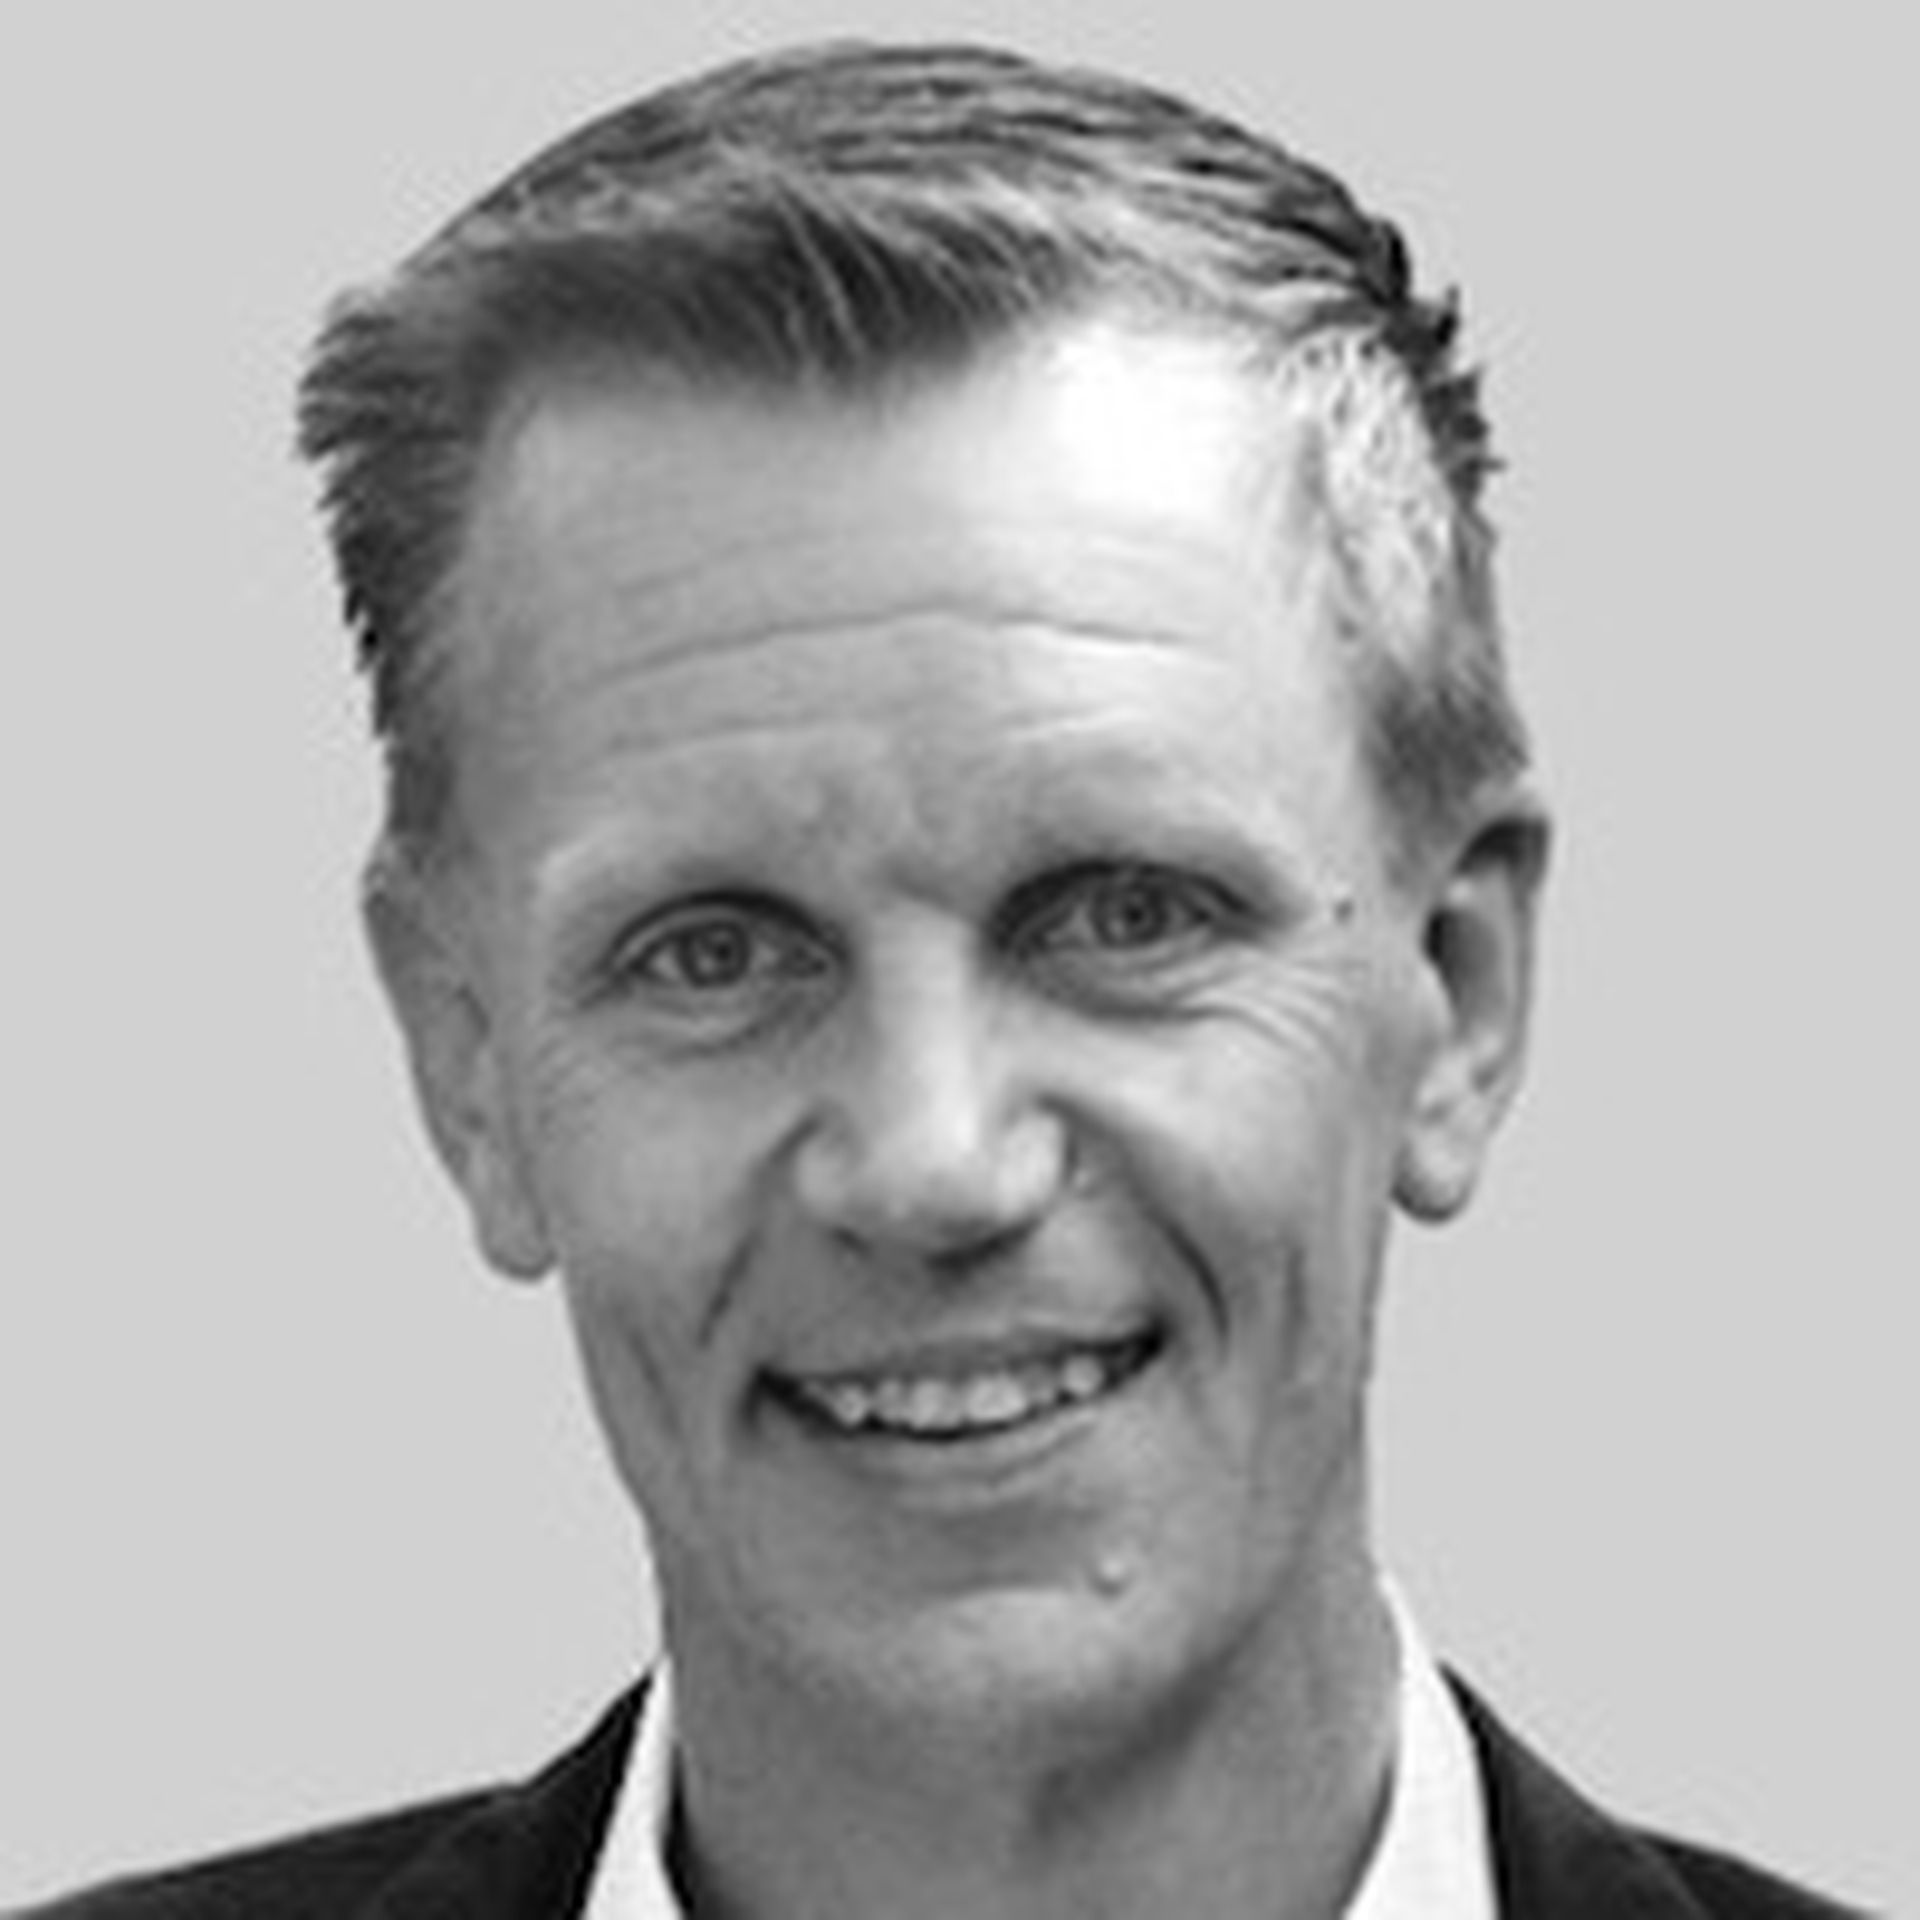 Thomas Neergaard Hansen